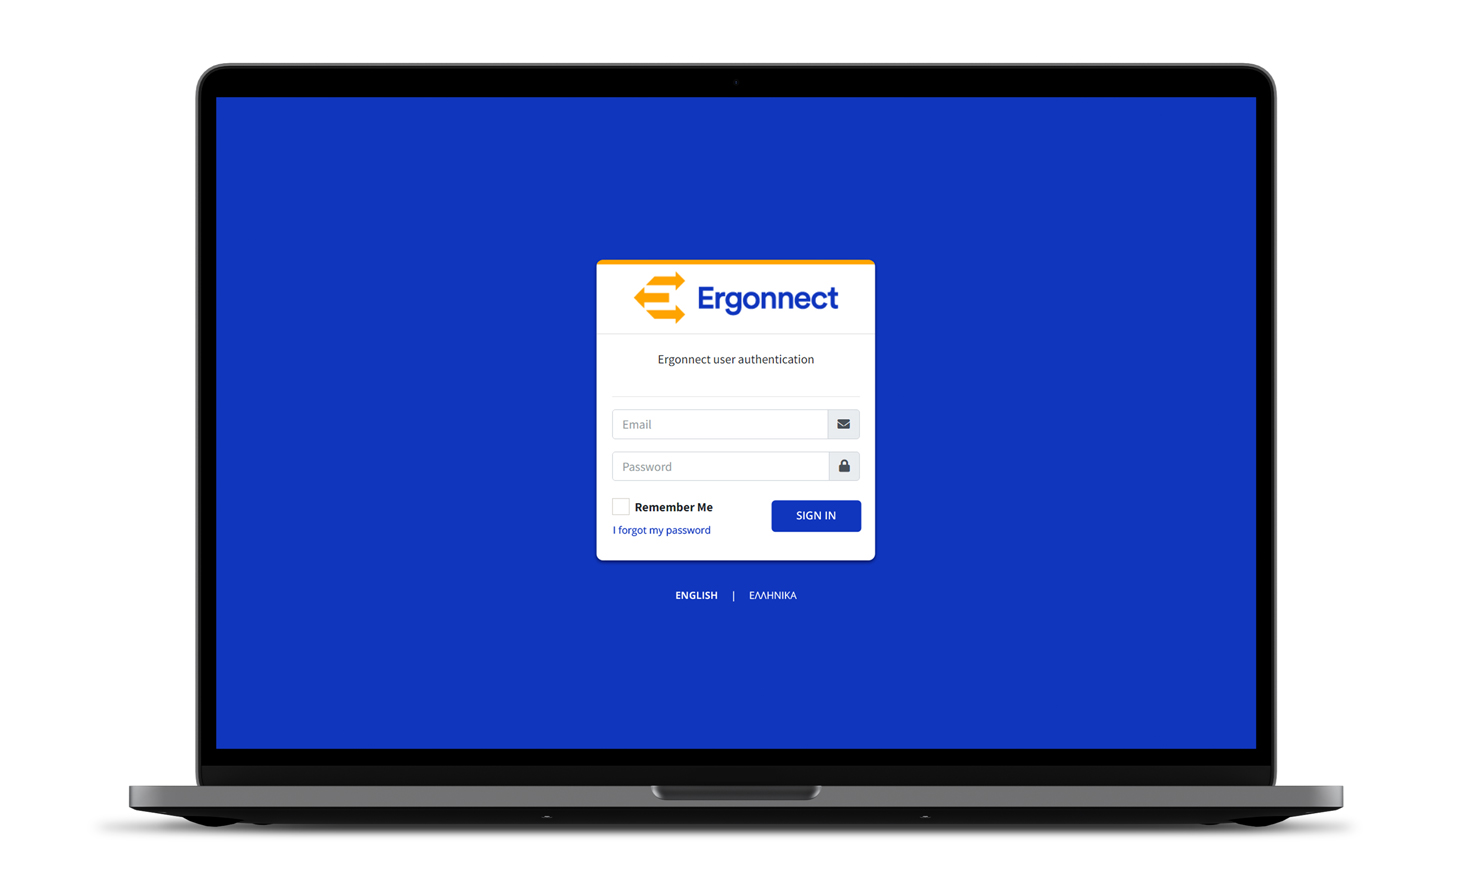 Η οθόνη σύνδεσης για την εφαρμογή Ergonnect WEB-BASED ΛΟΓΙΣΜΙΚΟ